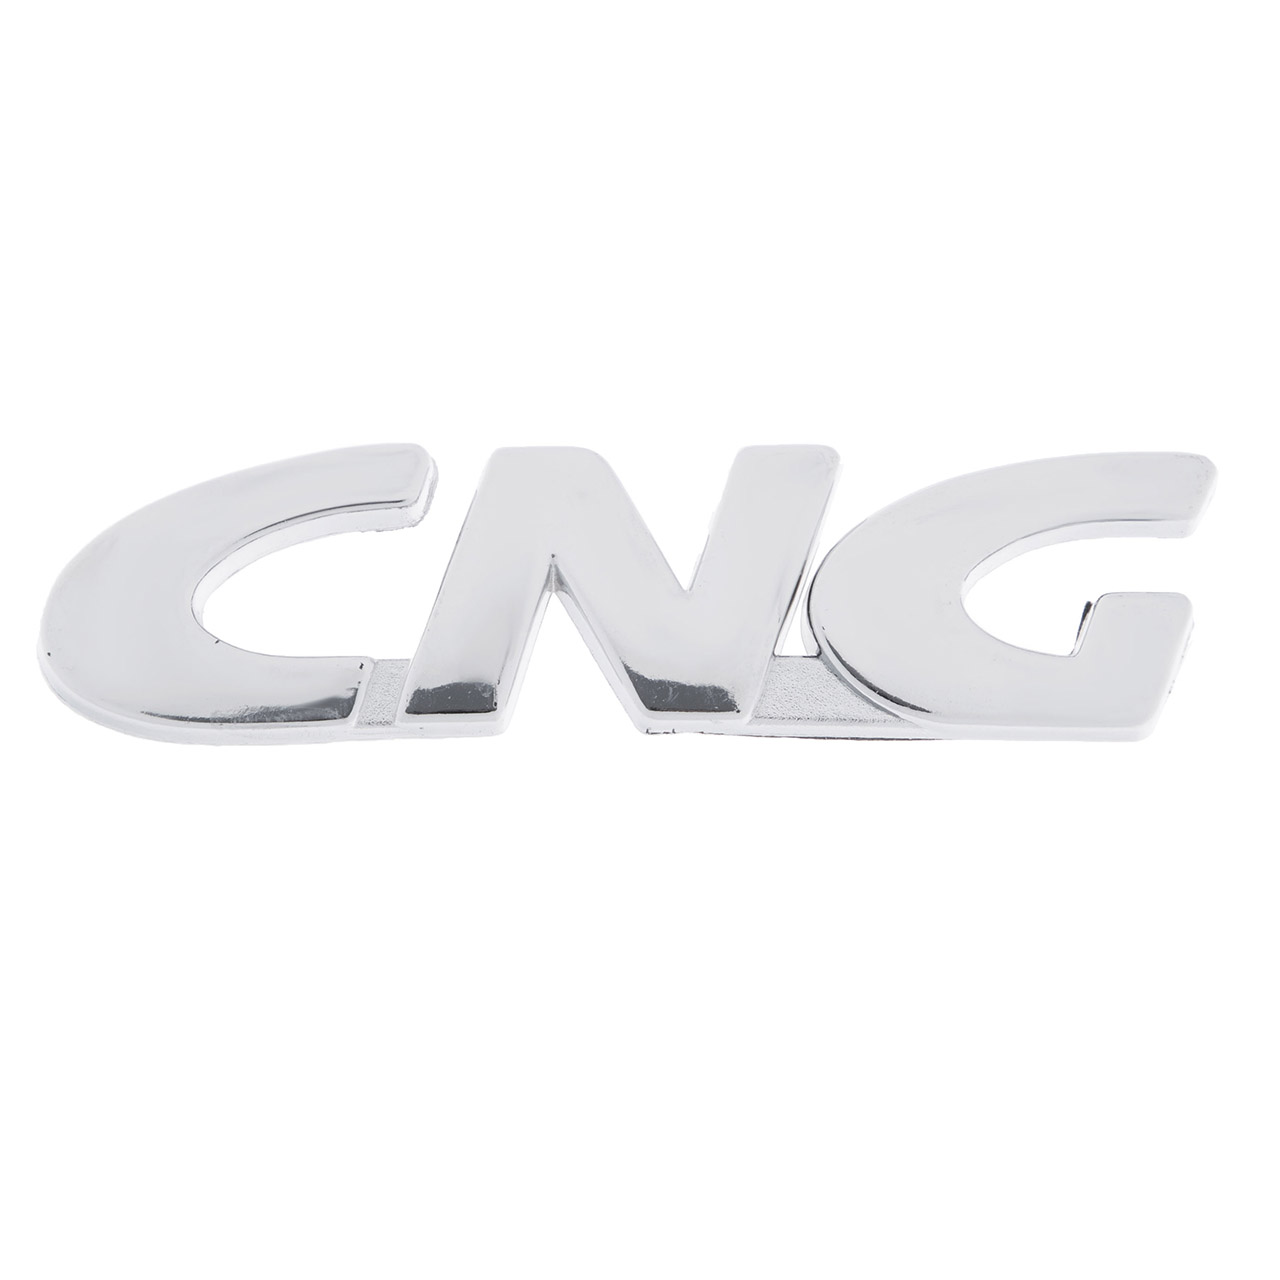 نقد و بررسی آرم خودرو طرح CNG کد 103680 توسط خریداران